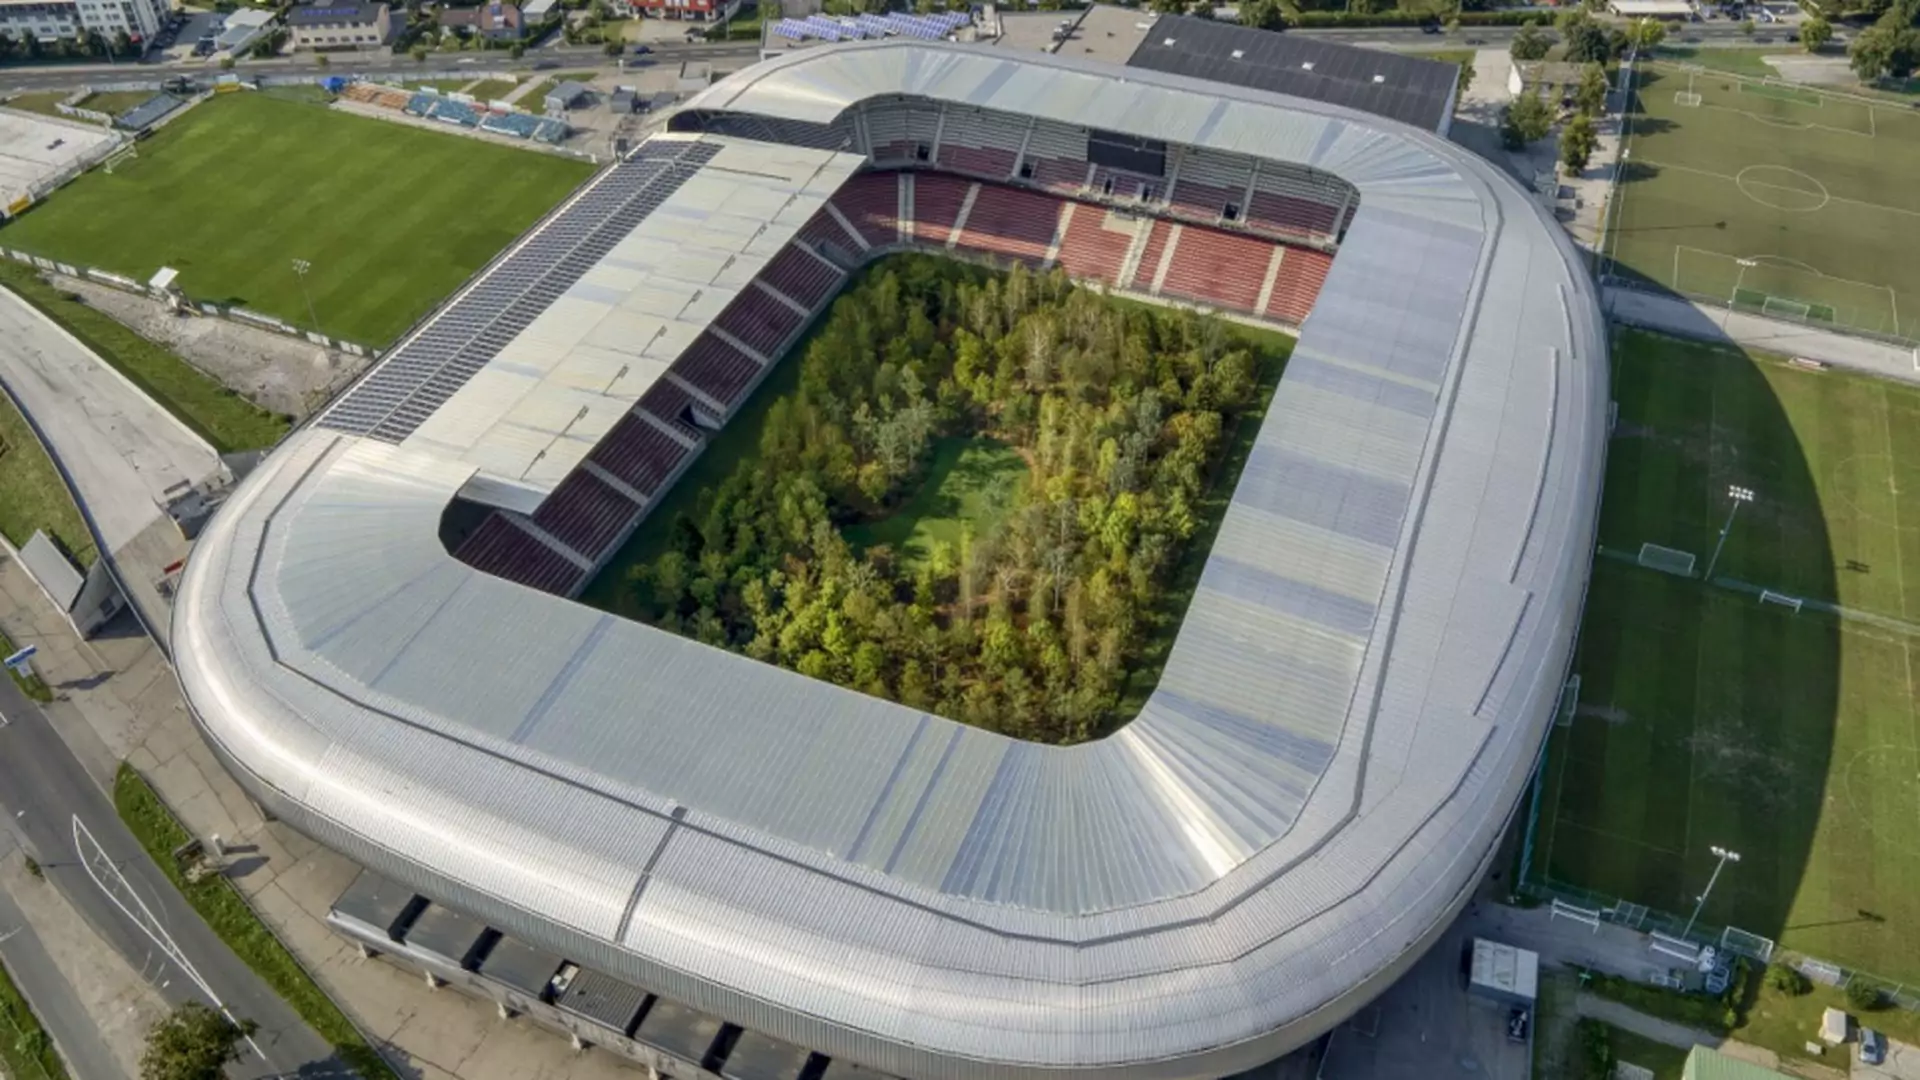 Stadion z Euro 2008 zamieniony w leśne ZOO. Będzie otwarty za darmo